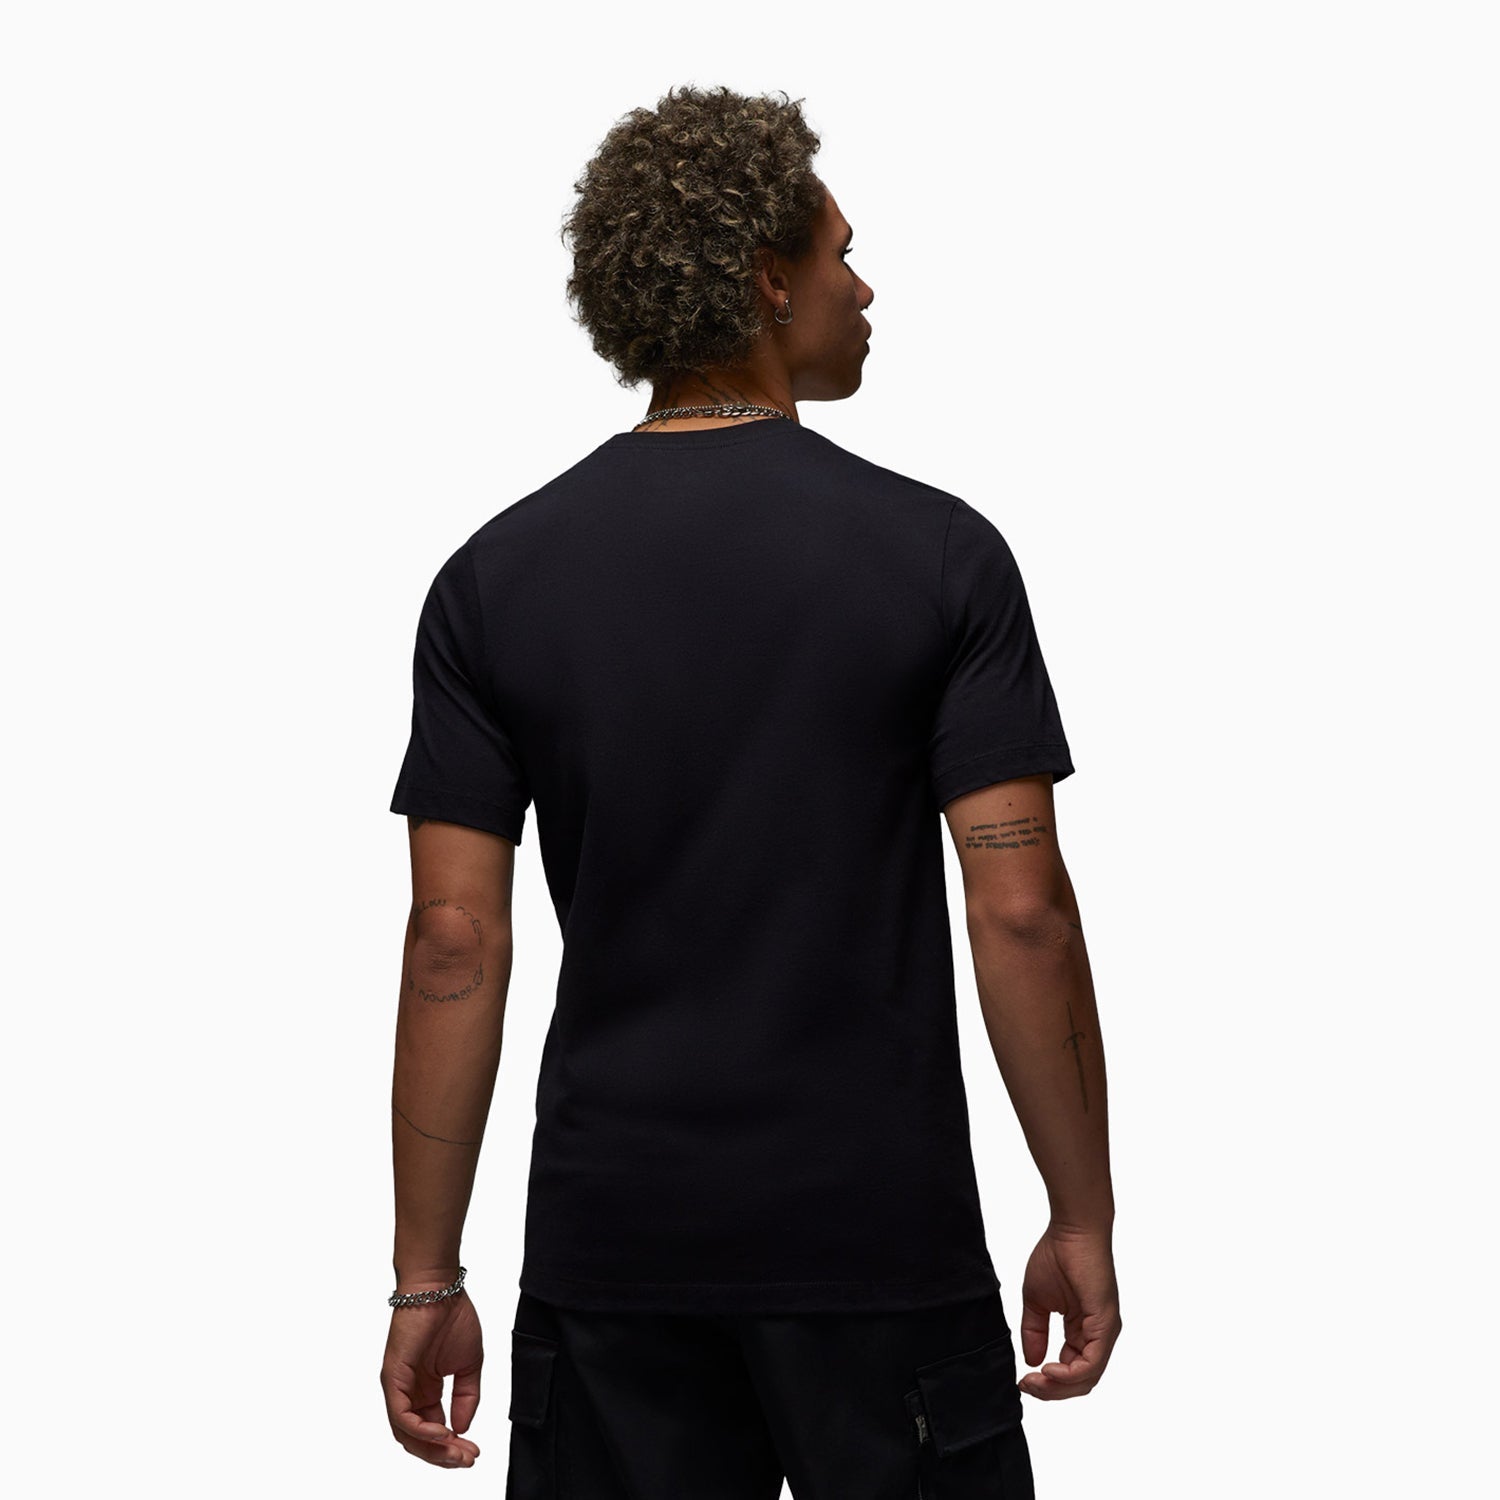 mens-flight-jordan-short-sleeves-t-shirt-dv8418-430